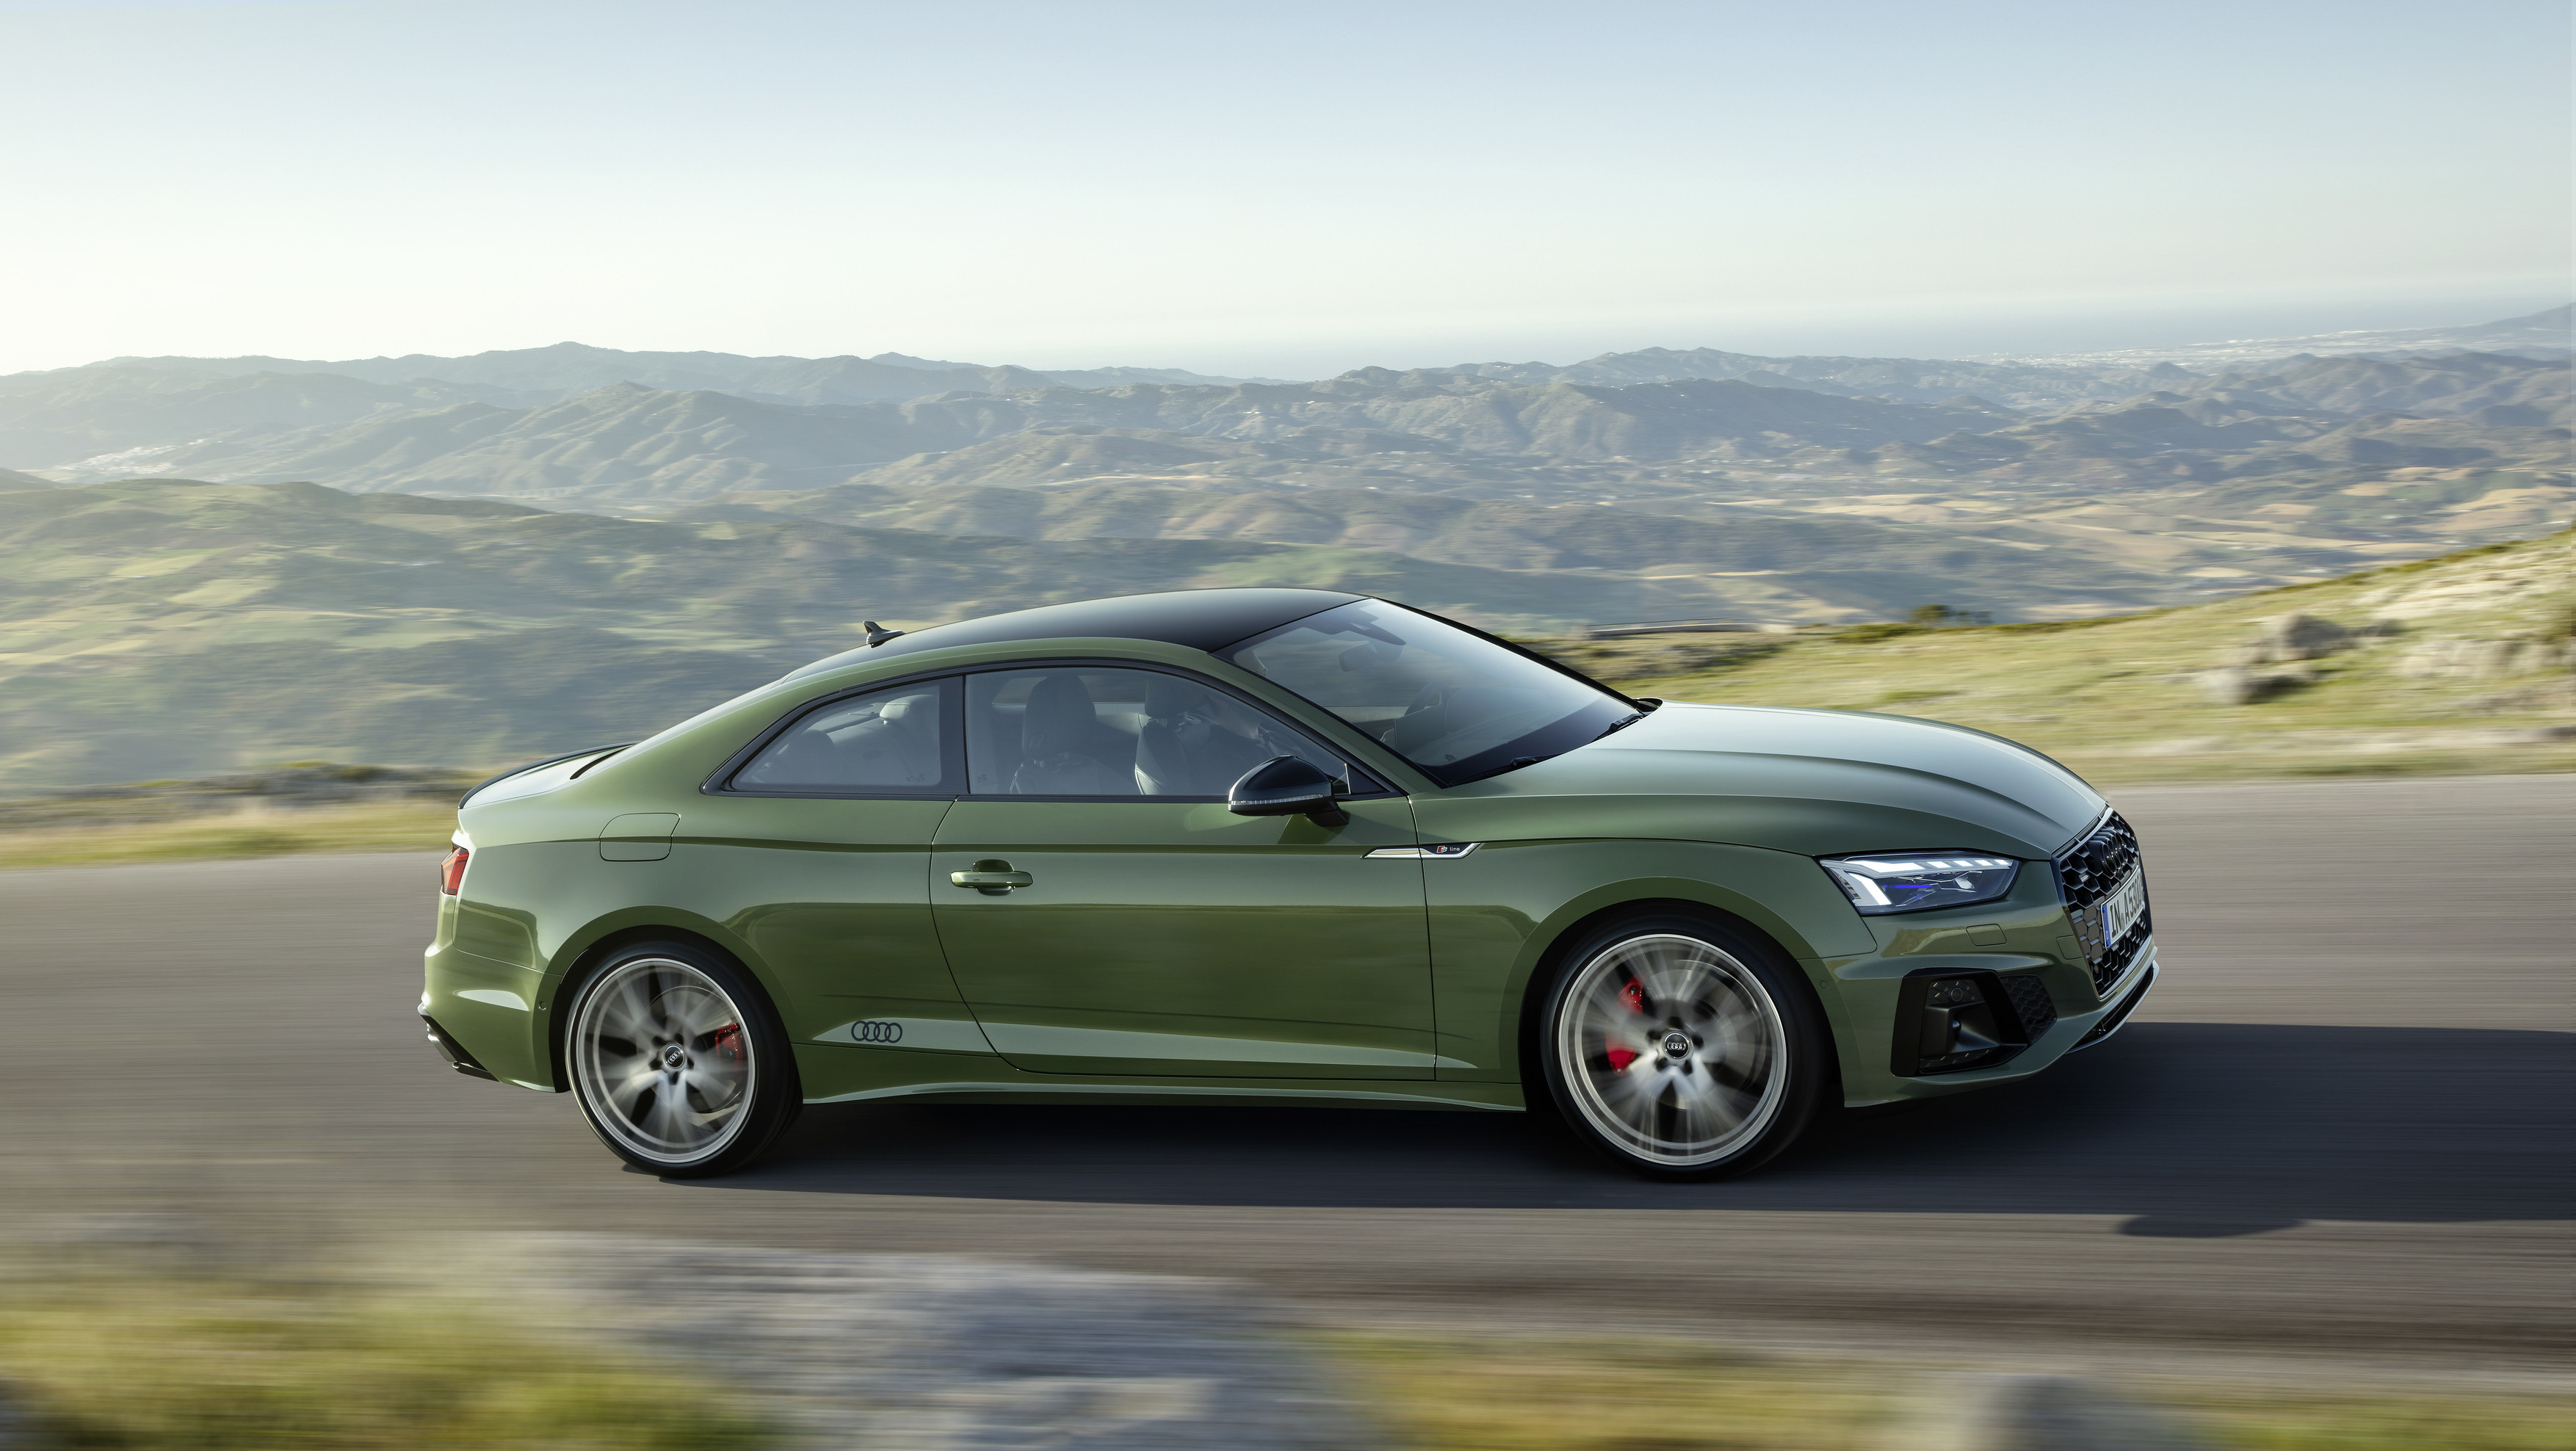  De Audi A5 Coupé is te personaliseren aan de hand van advanced- en S line-pakketten